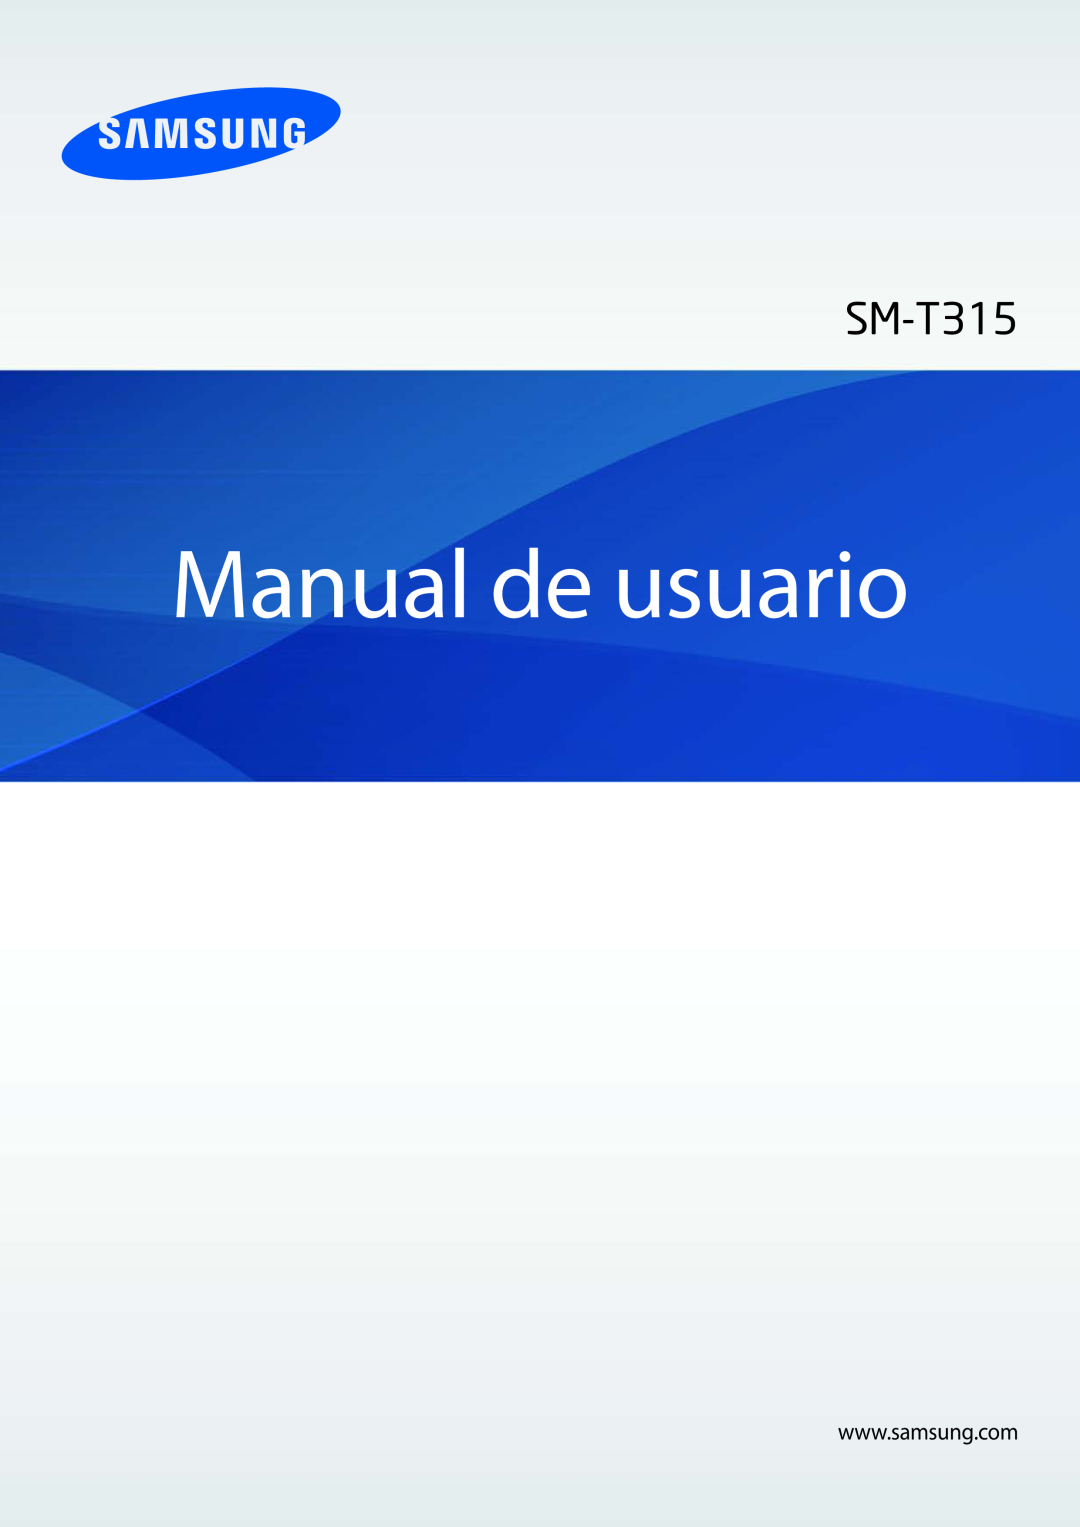 Samsung SM-T3150ZWAATL manual Manual de usuario 